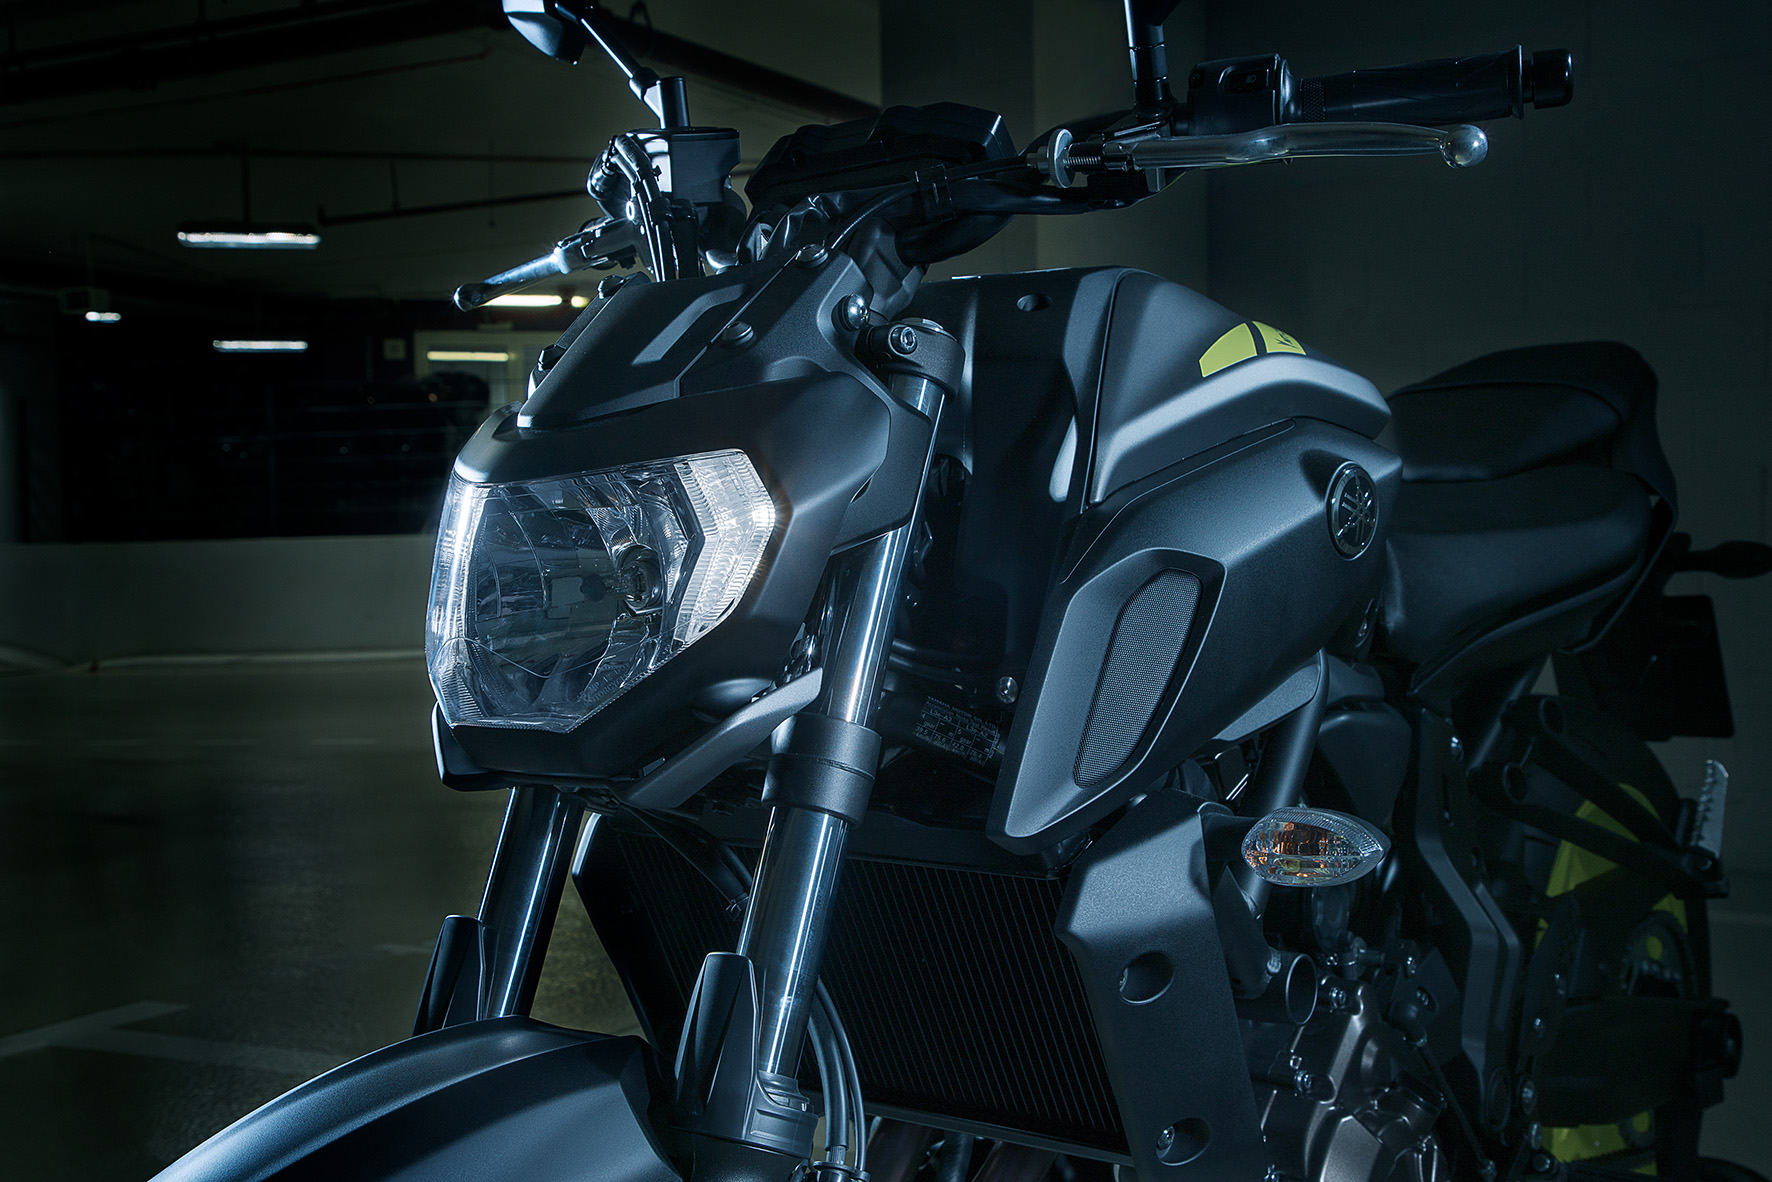 Nova Yamaha MT-07 ABS 2019 